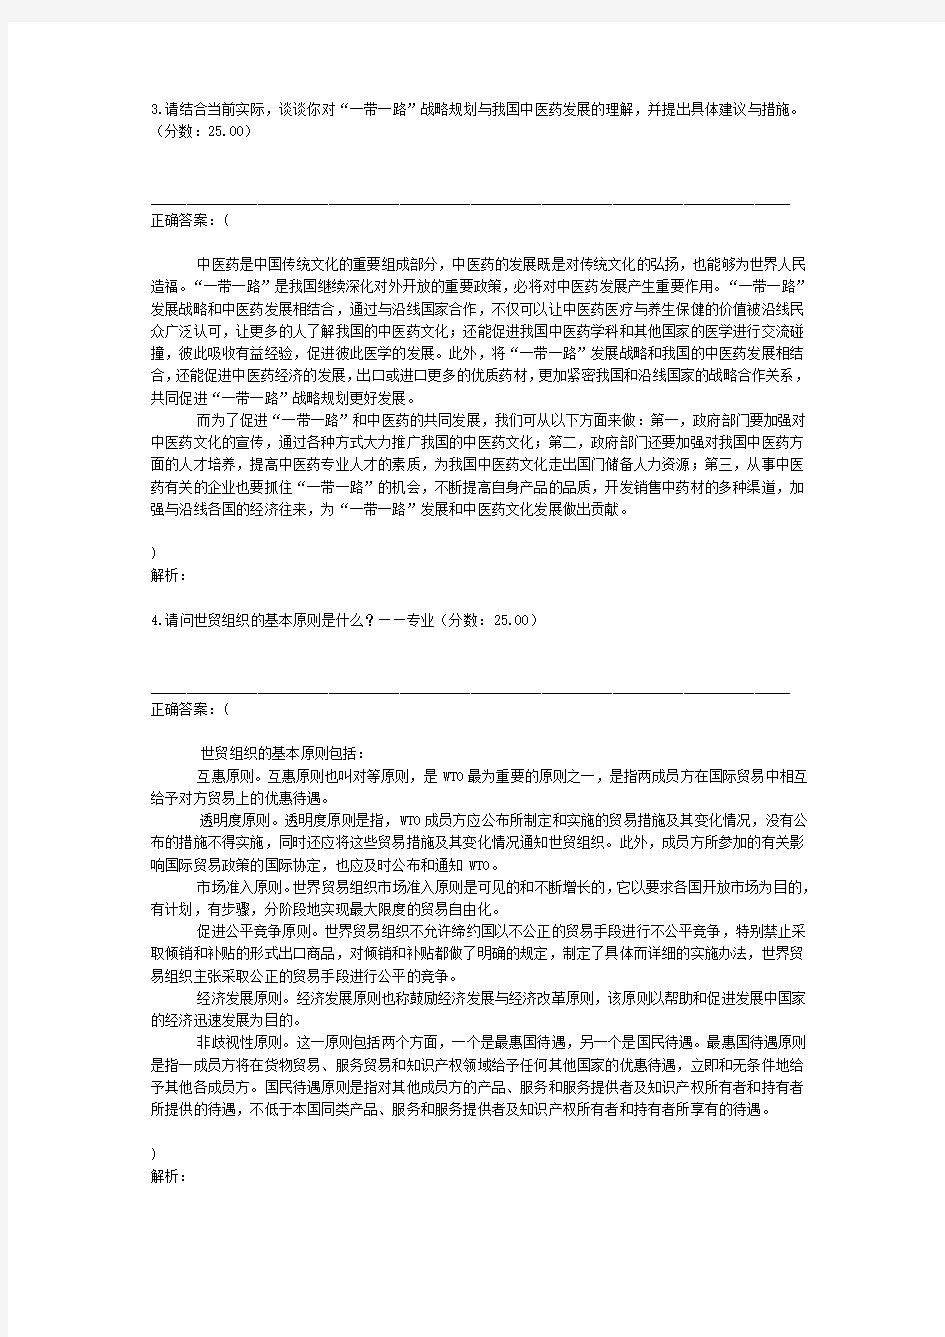 2018年1月31日江苏省中医院事业单位招聘考试面试真题